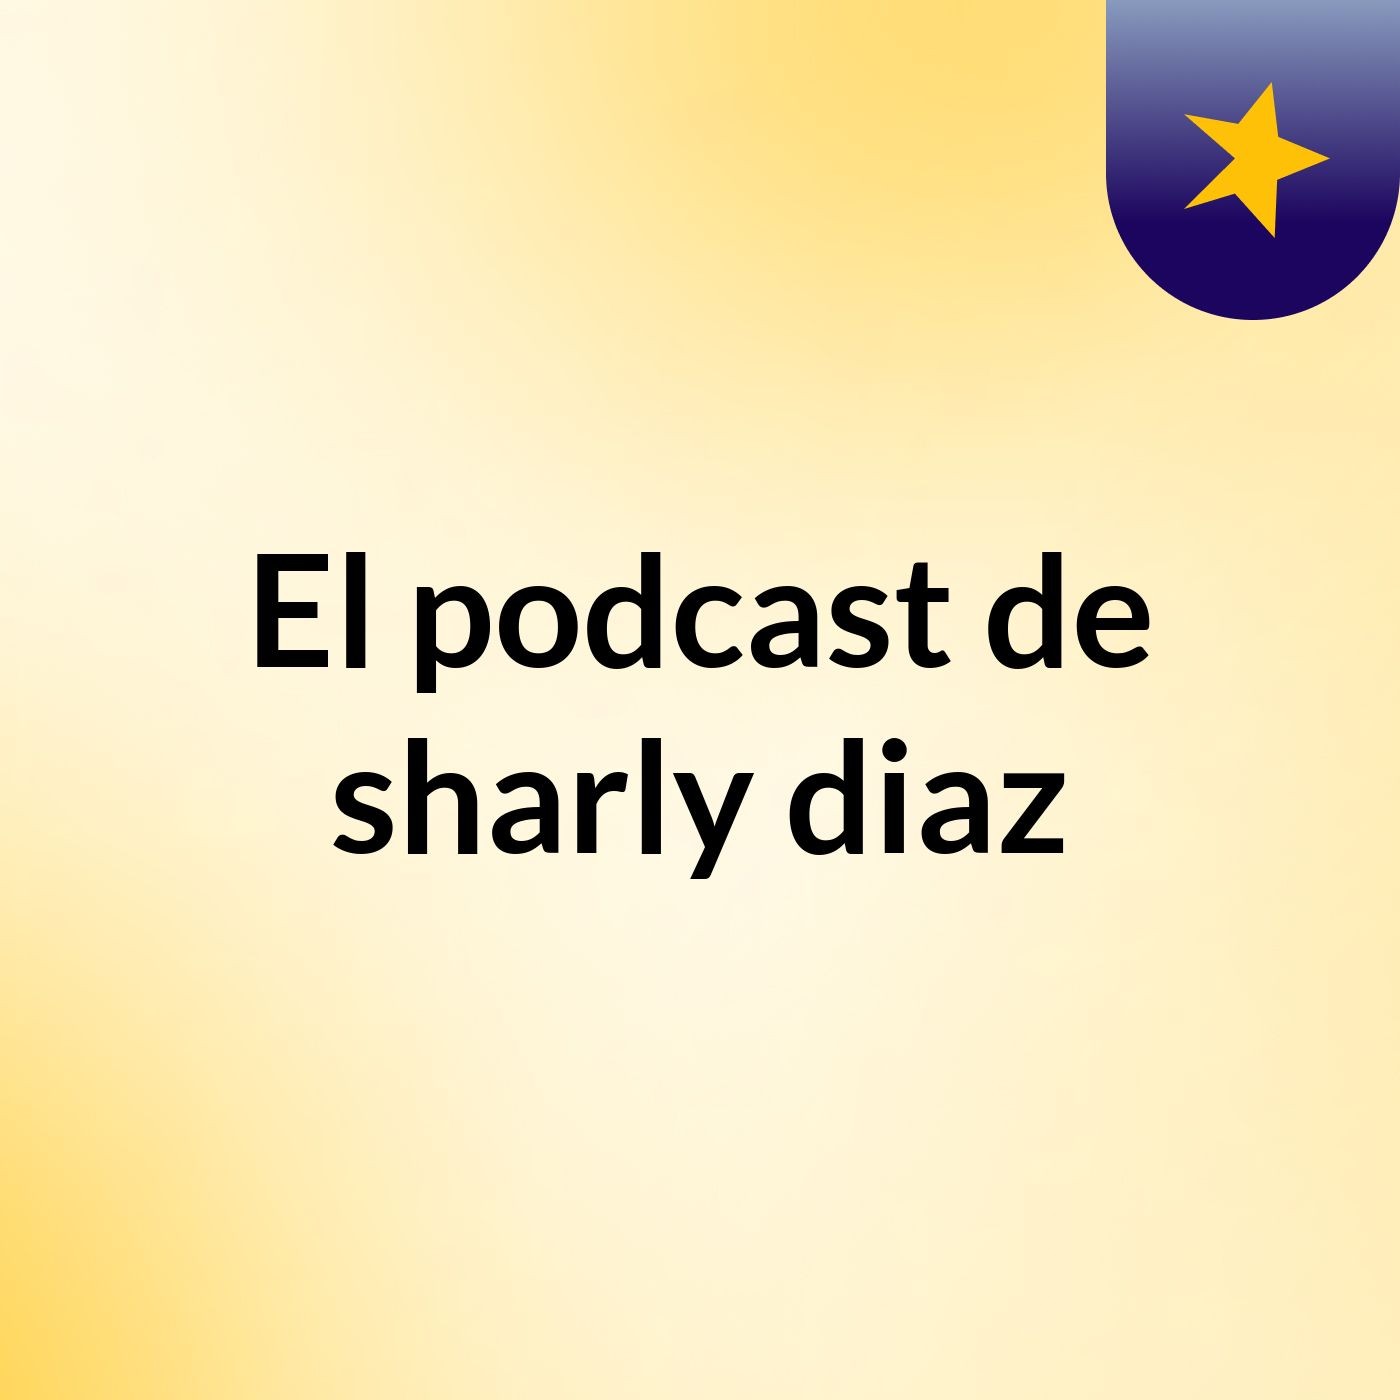 El podcast de sharly diaz